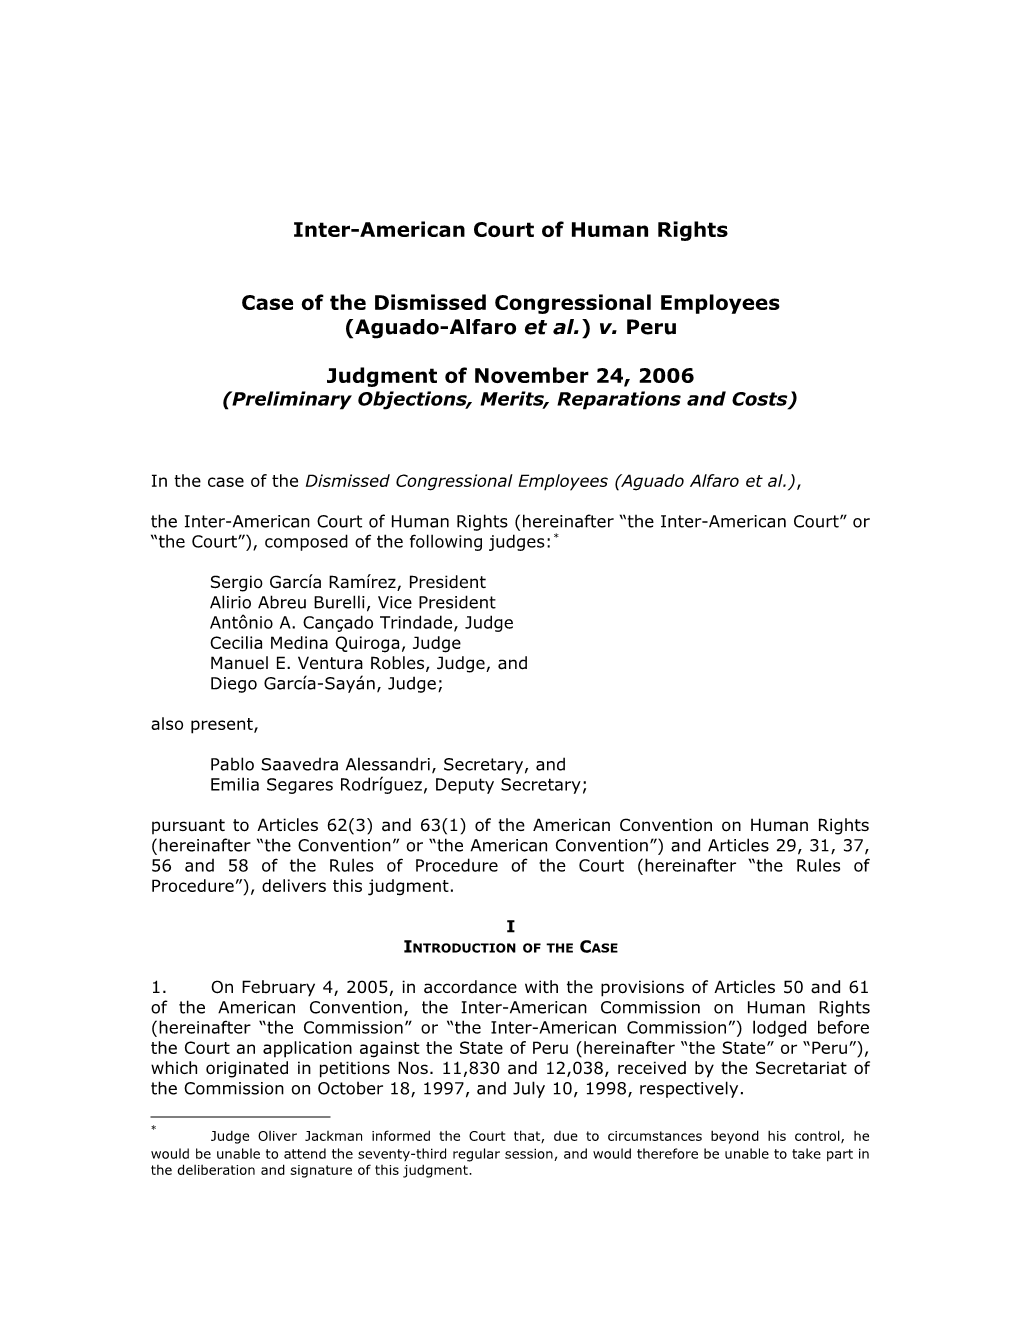 Corte Interamericana De Derechos Humanos s3